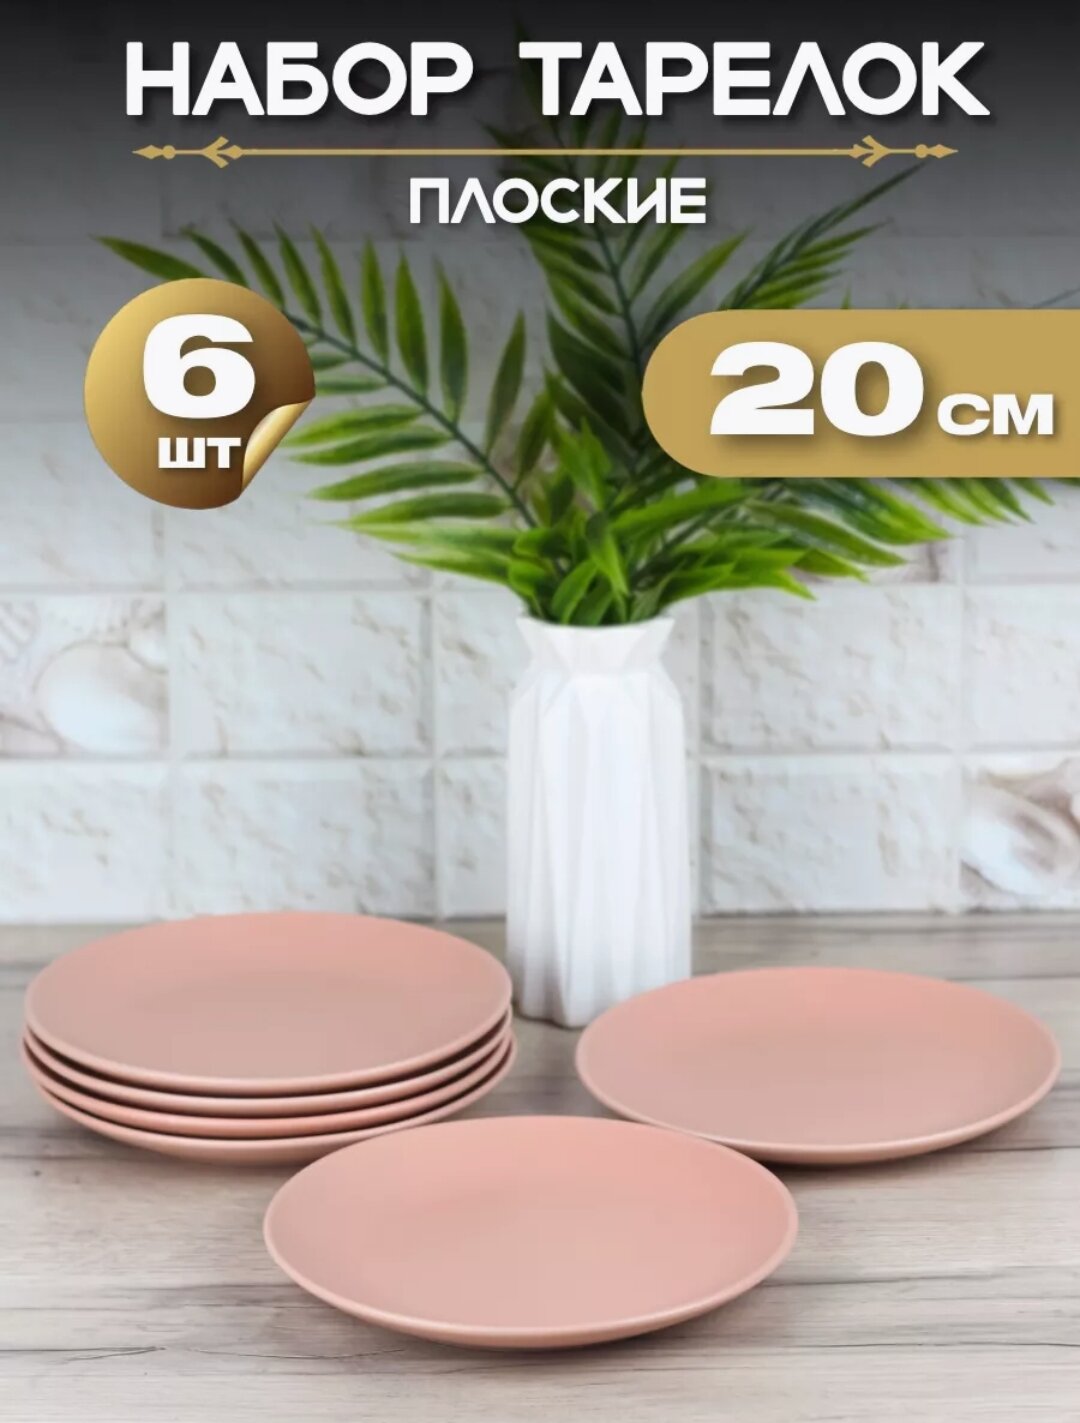 Тарелка плоская "Розовый матовый" d20 см/ Набор тарелок 6 шт